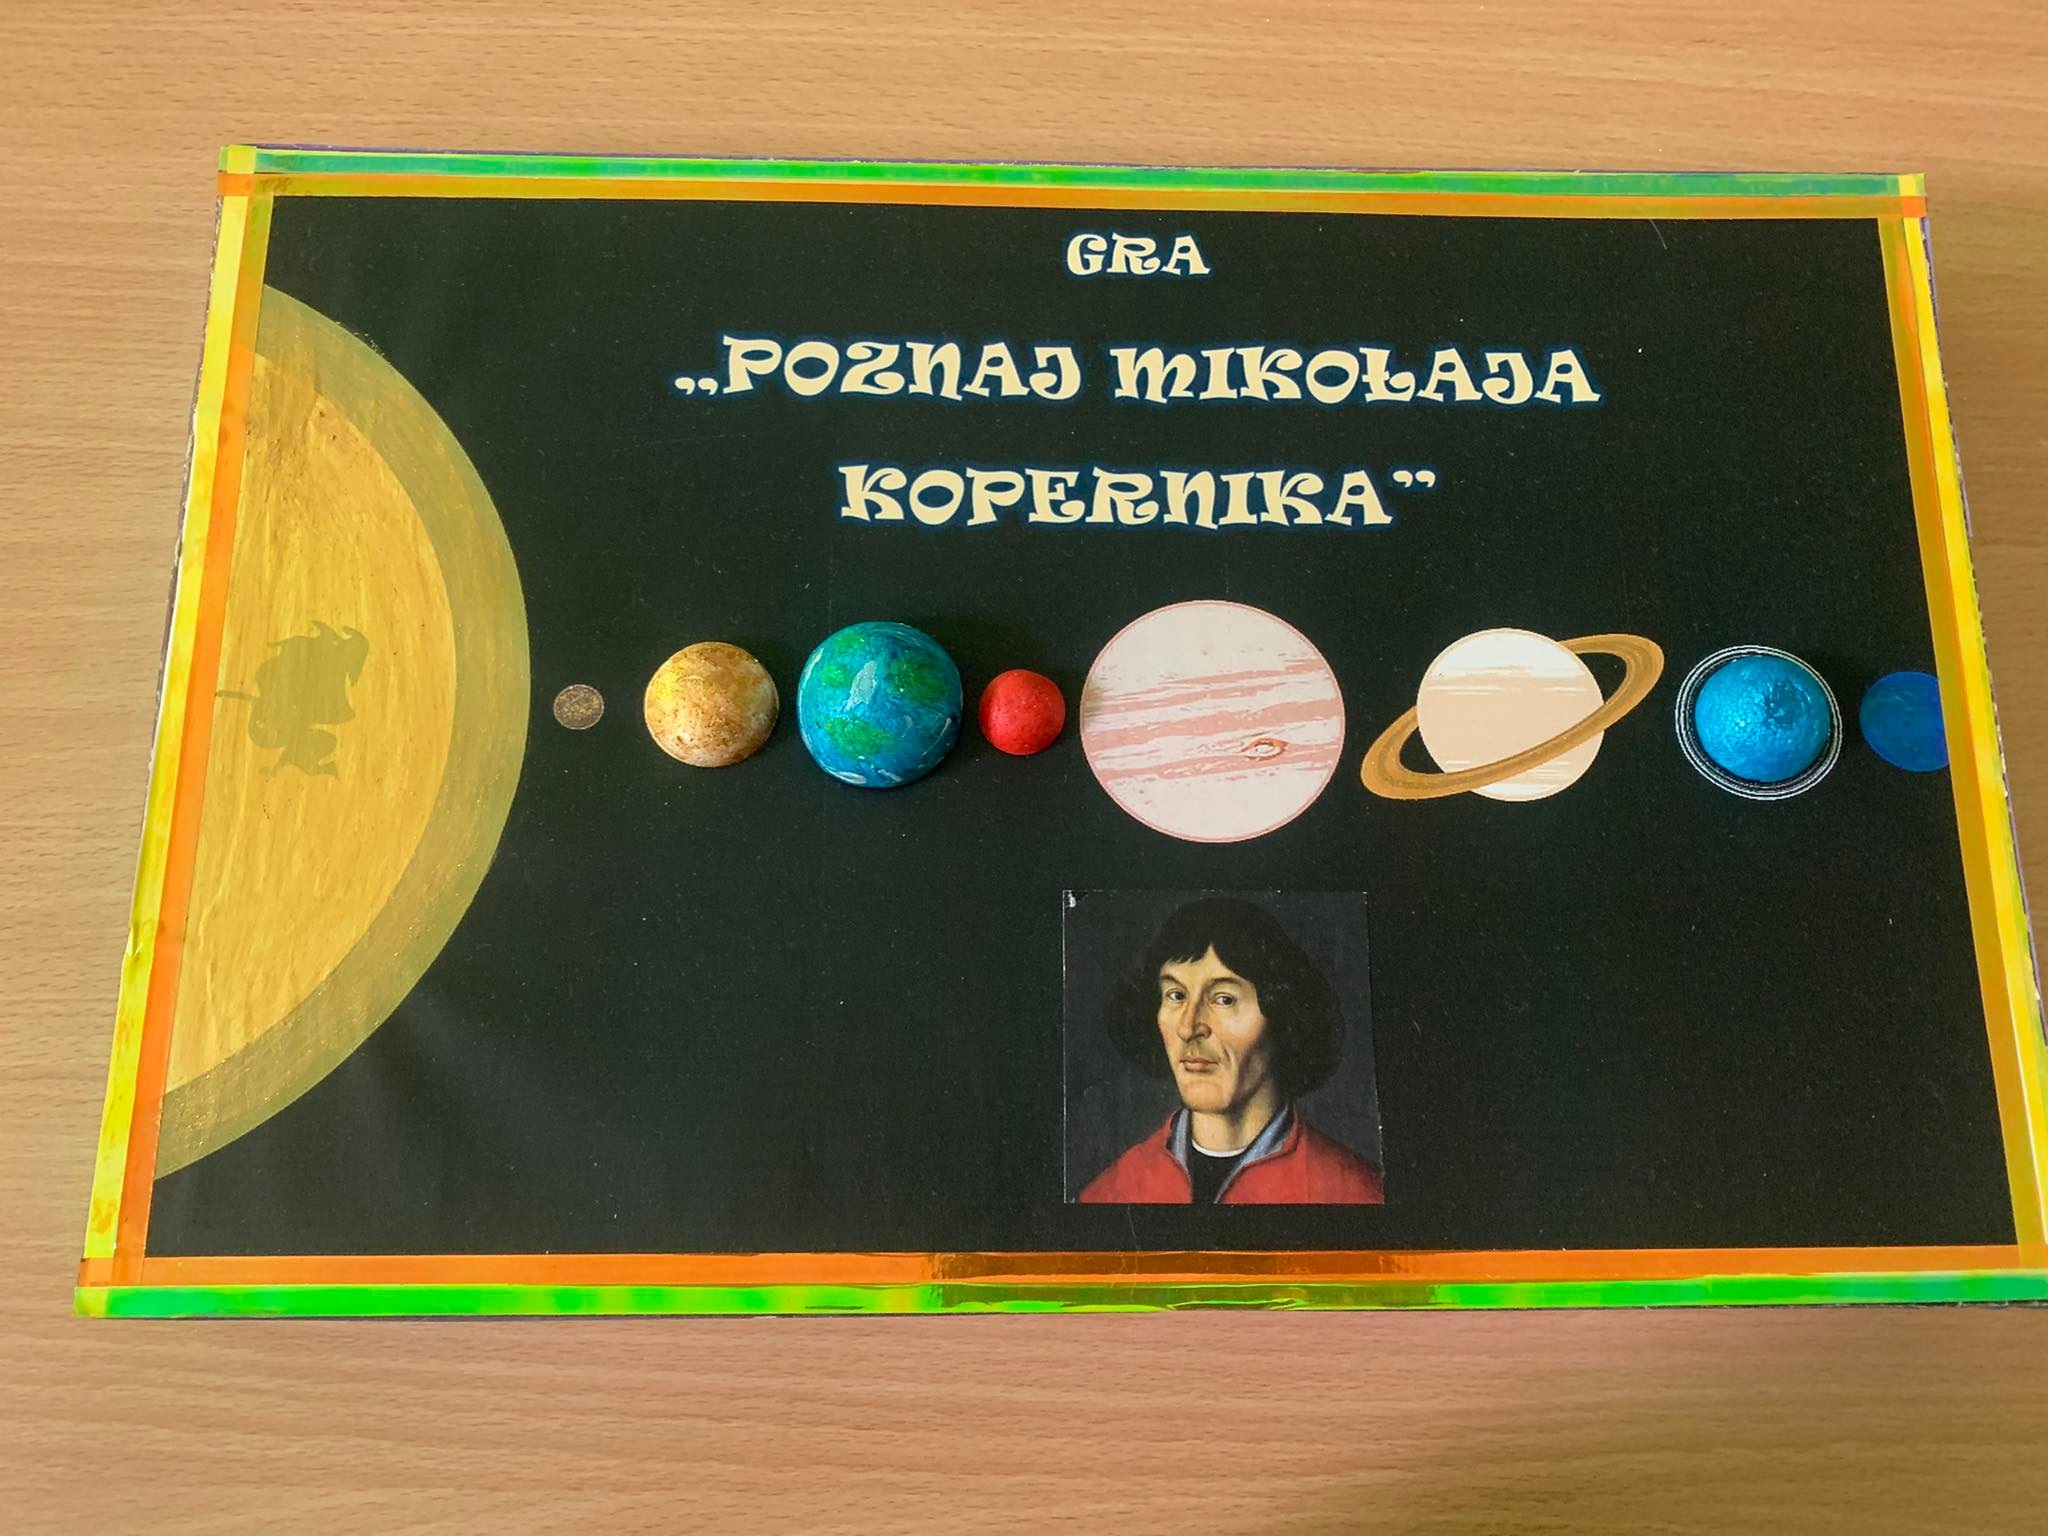 gra o Koperniku wykonana przez uczniów szkoły